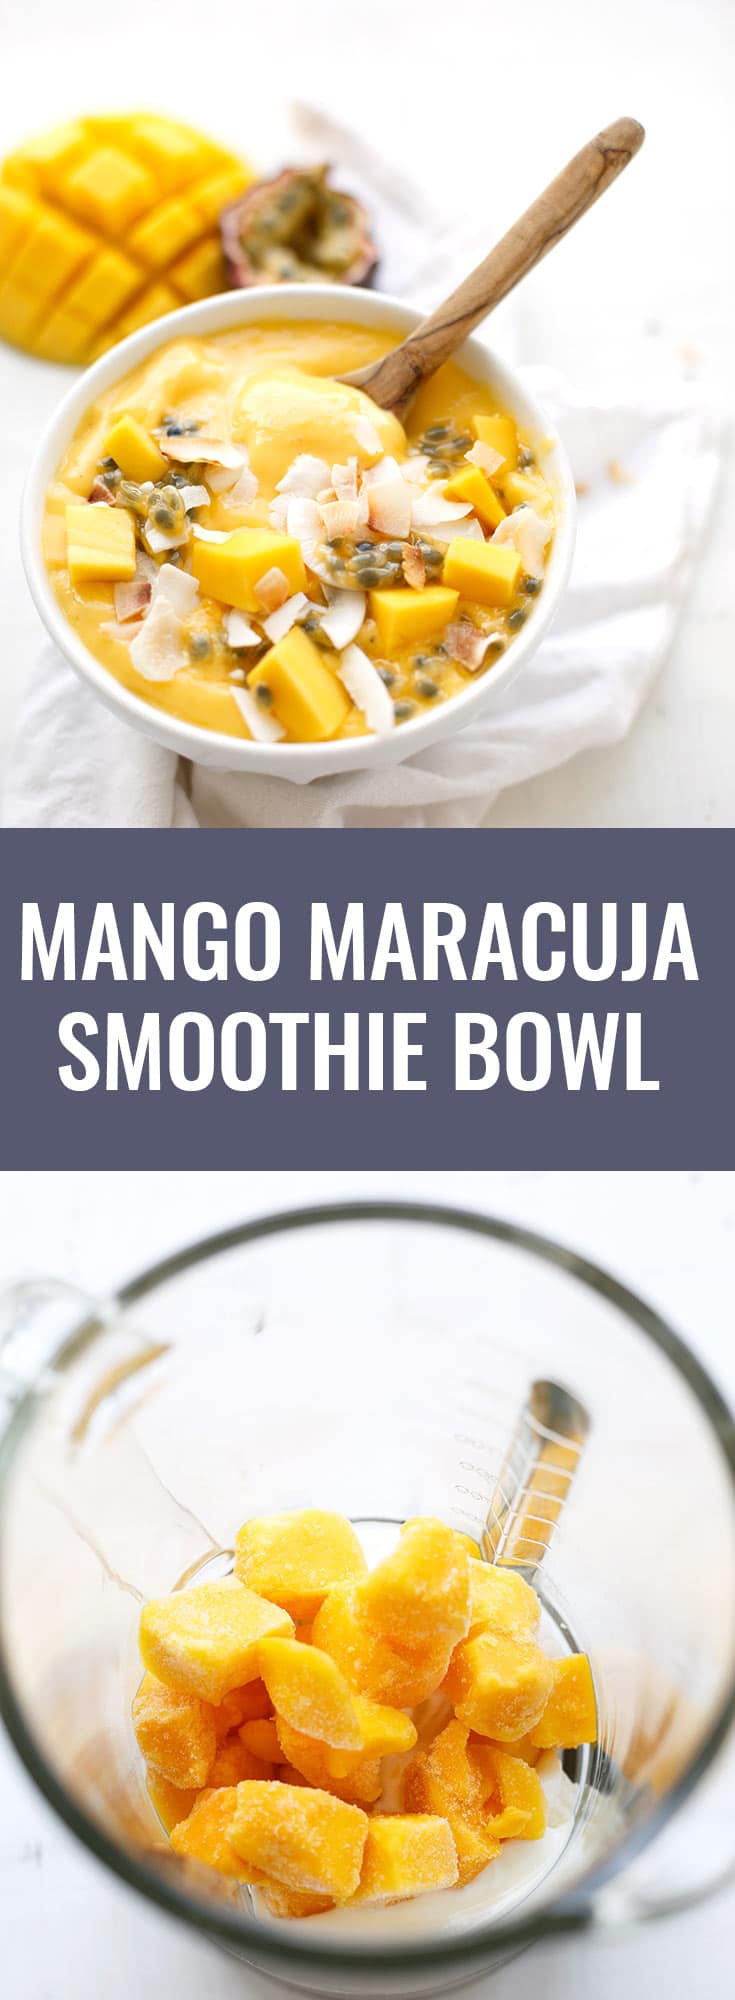 Mango Smoothie Bowl mit Banane und Maracuja. Dieses Rezept ist schnell, einfach und perfekt für den Sommer - Kochkarussell.com